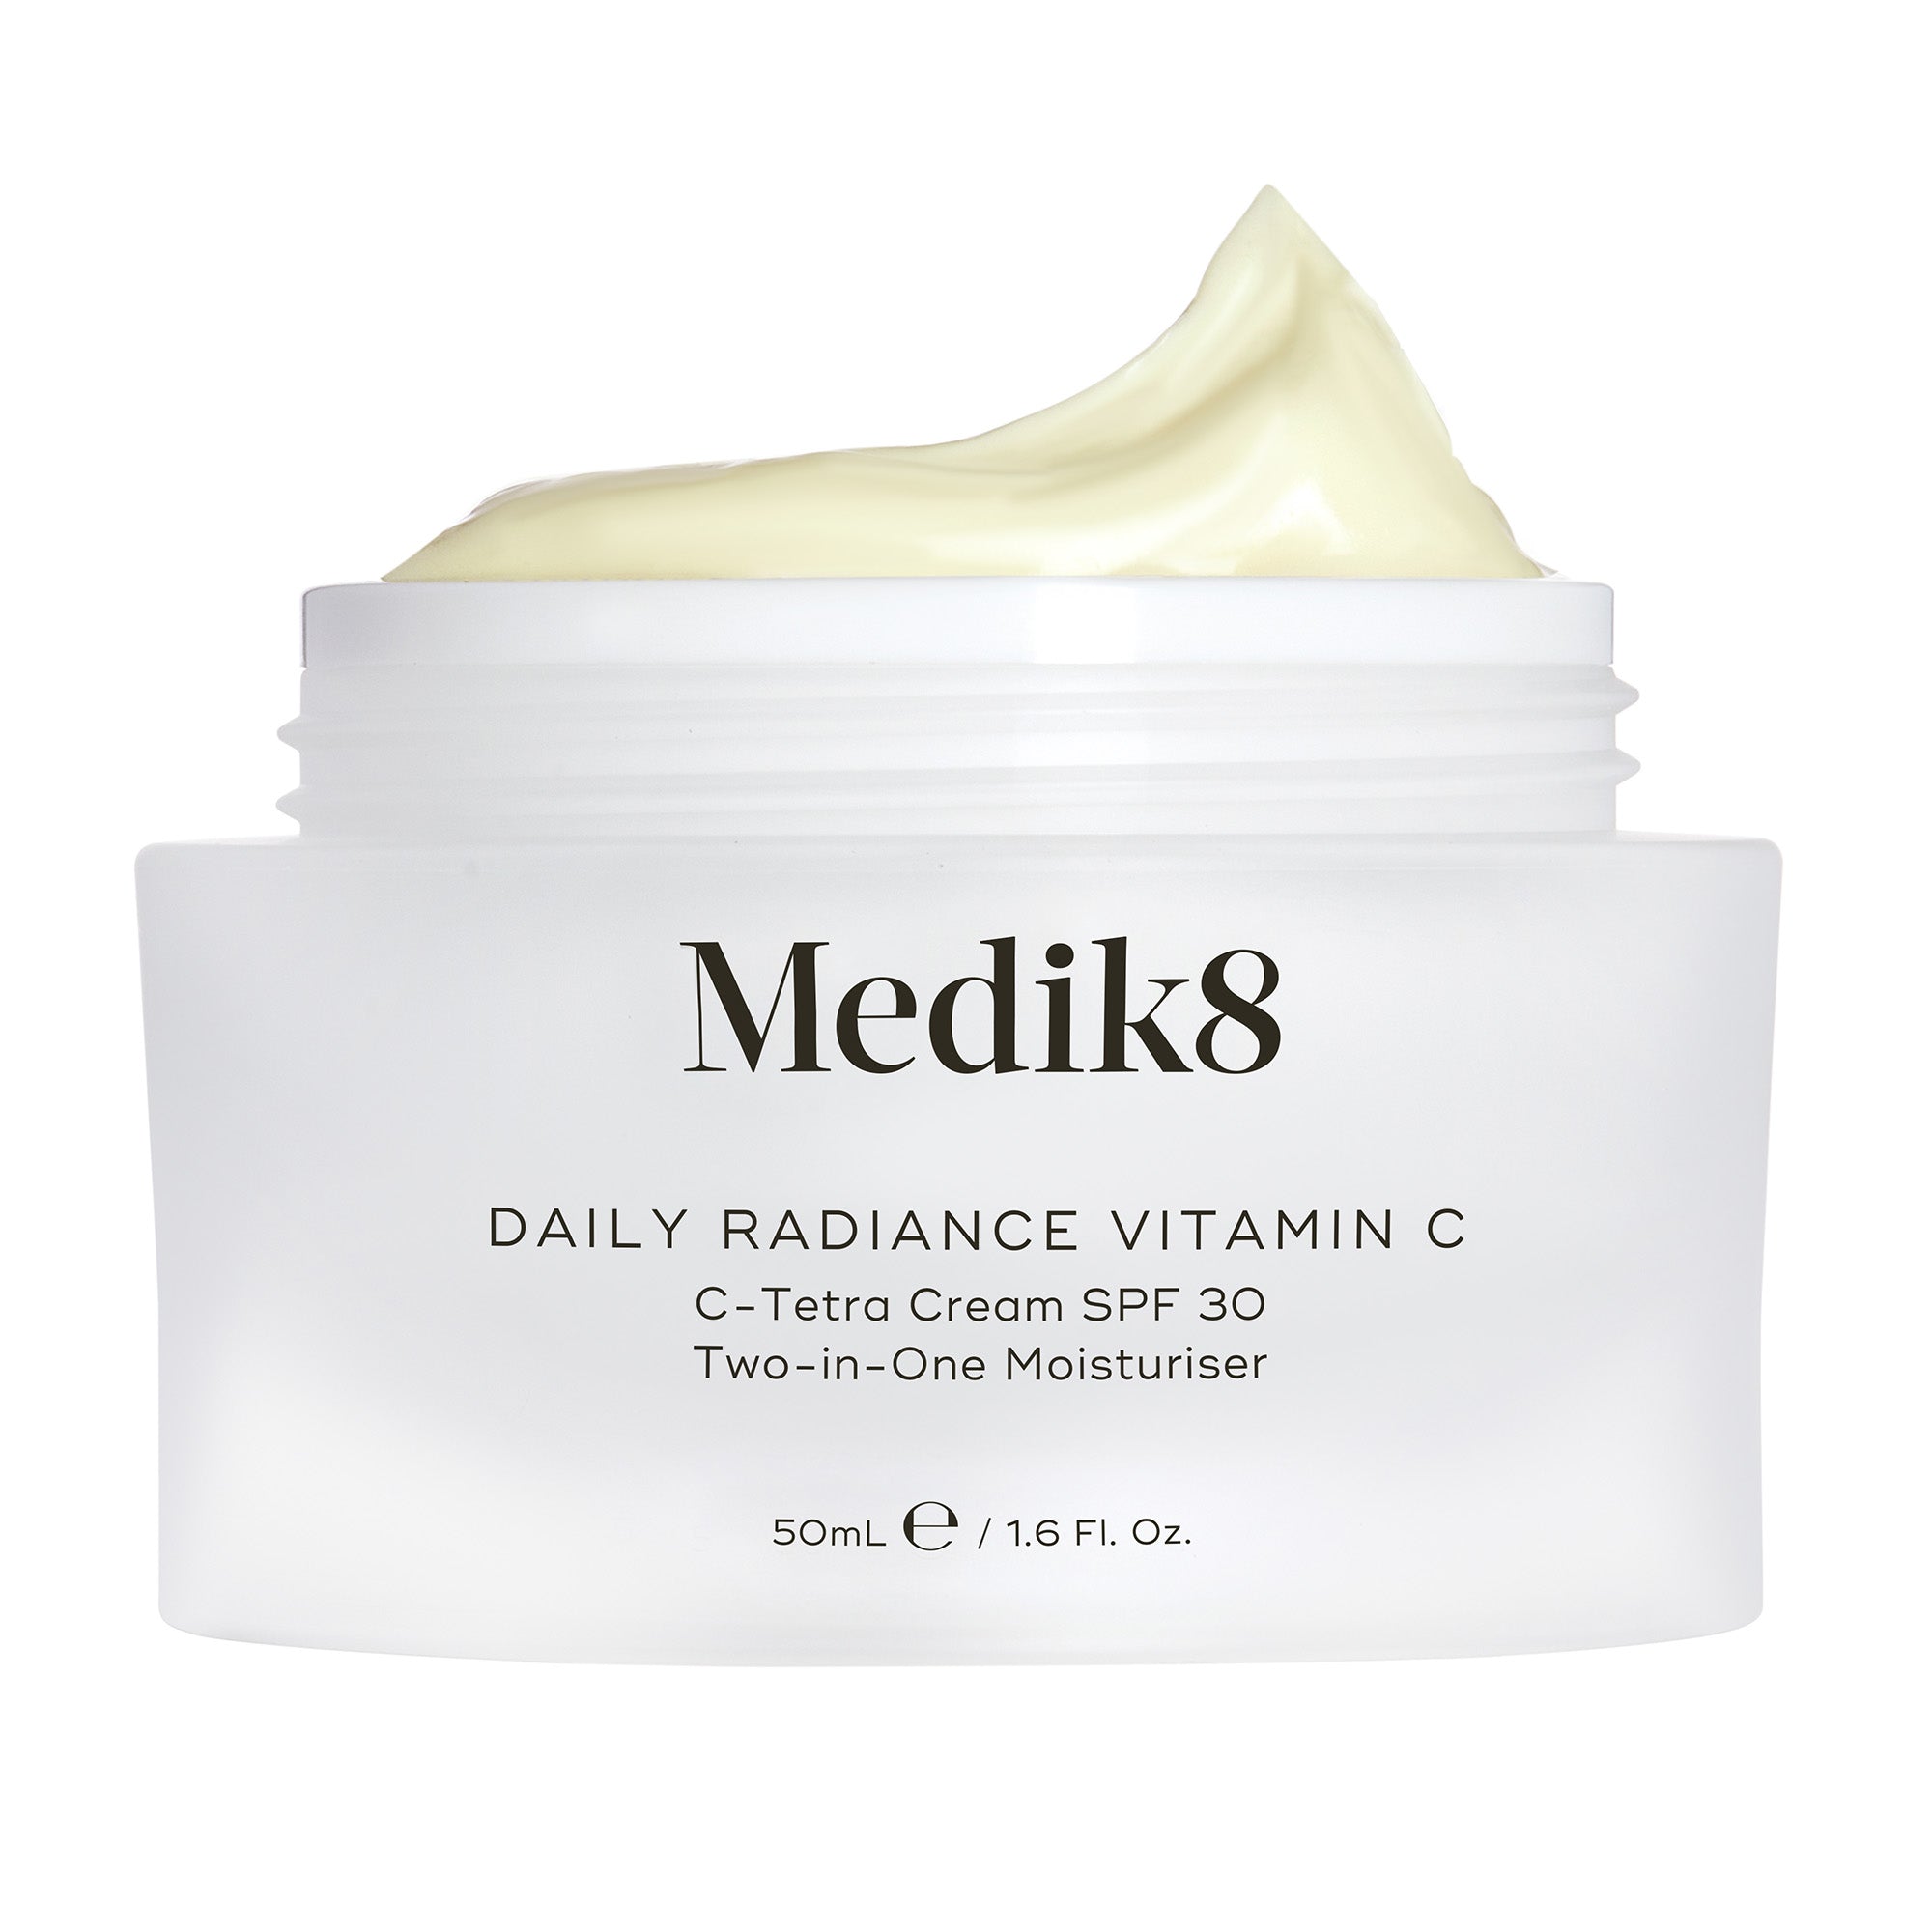 Daily Radiance Vitamin C™ - Medik8.fi